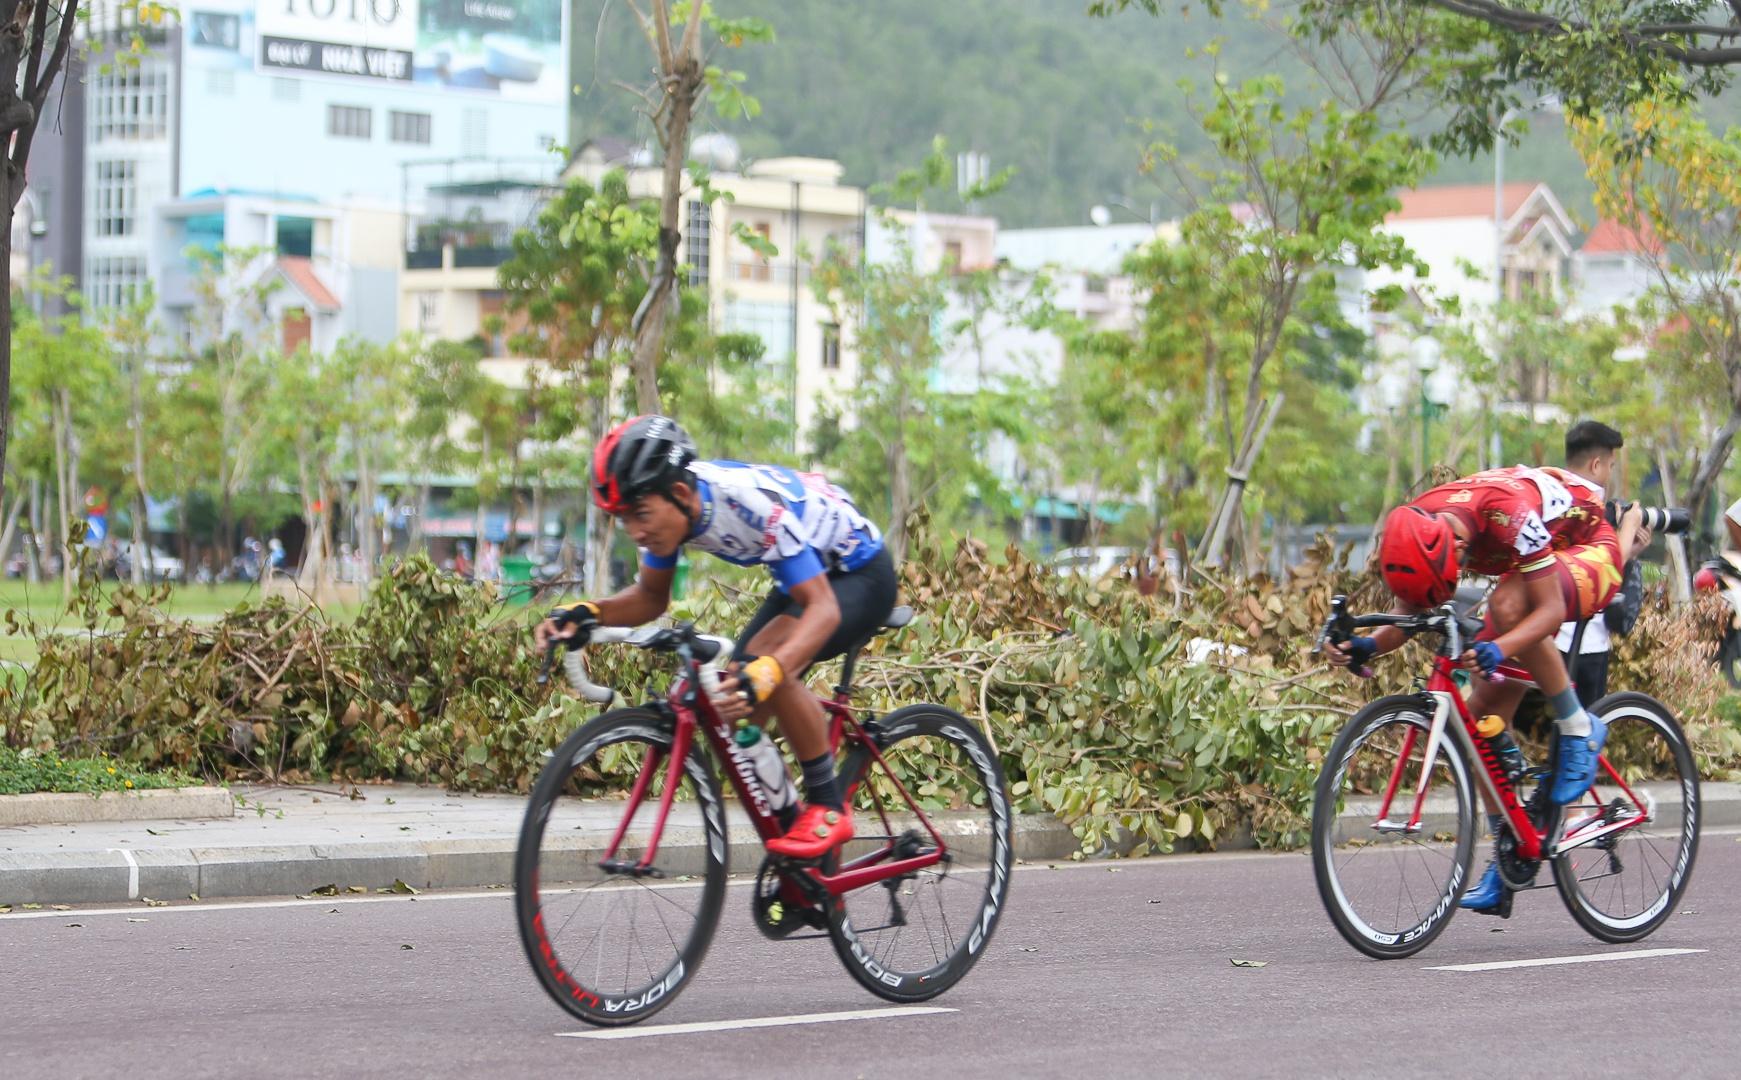 Chặng cuối giải xe đạp VTV kết thúc tốt đẹp tại Bình Định - ảnh 3